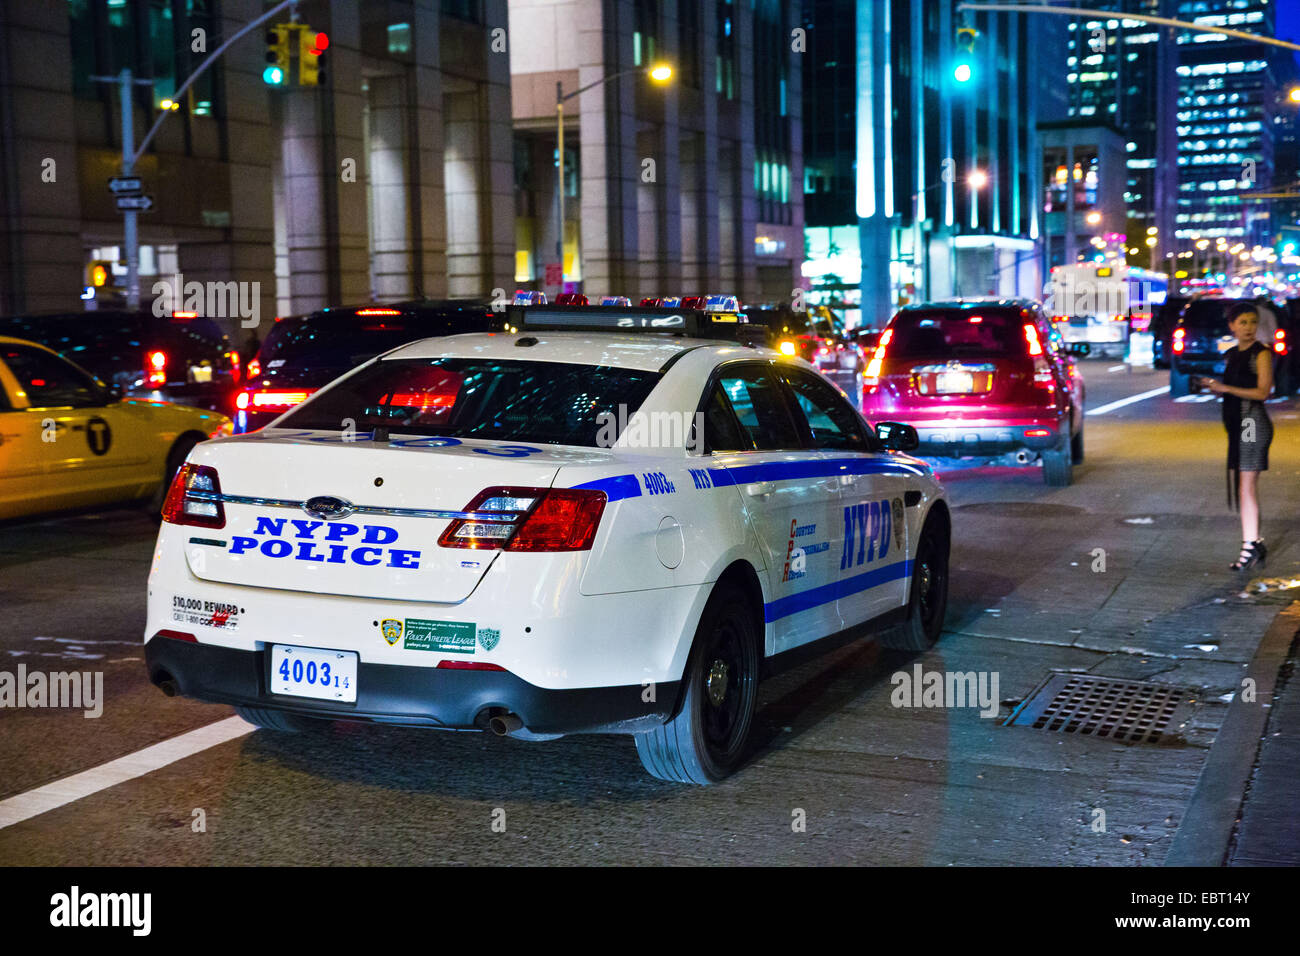 NYPD vehicle, Manhattan, NY, USA, Oct. 16, 2014. Stock Photo